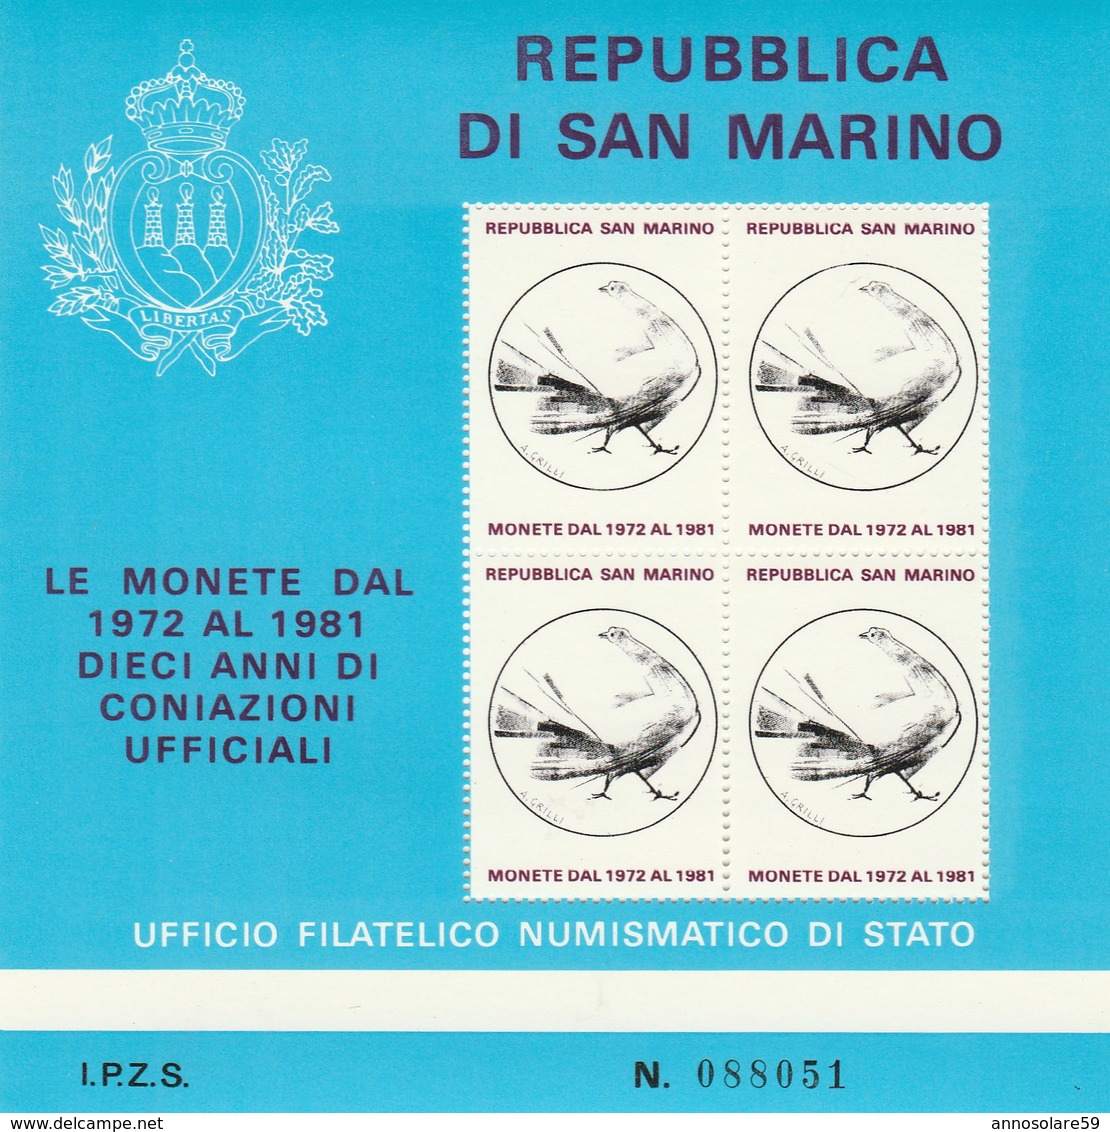 REPUBBLICA DI S. MARINO - LE MONETE DAL 1972 AL 1981 - FOGLIETTO FILATELICO (RARISSIMO) - NUOVO - LEGGI - Événements & Commémorations